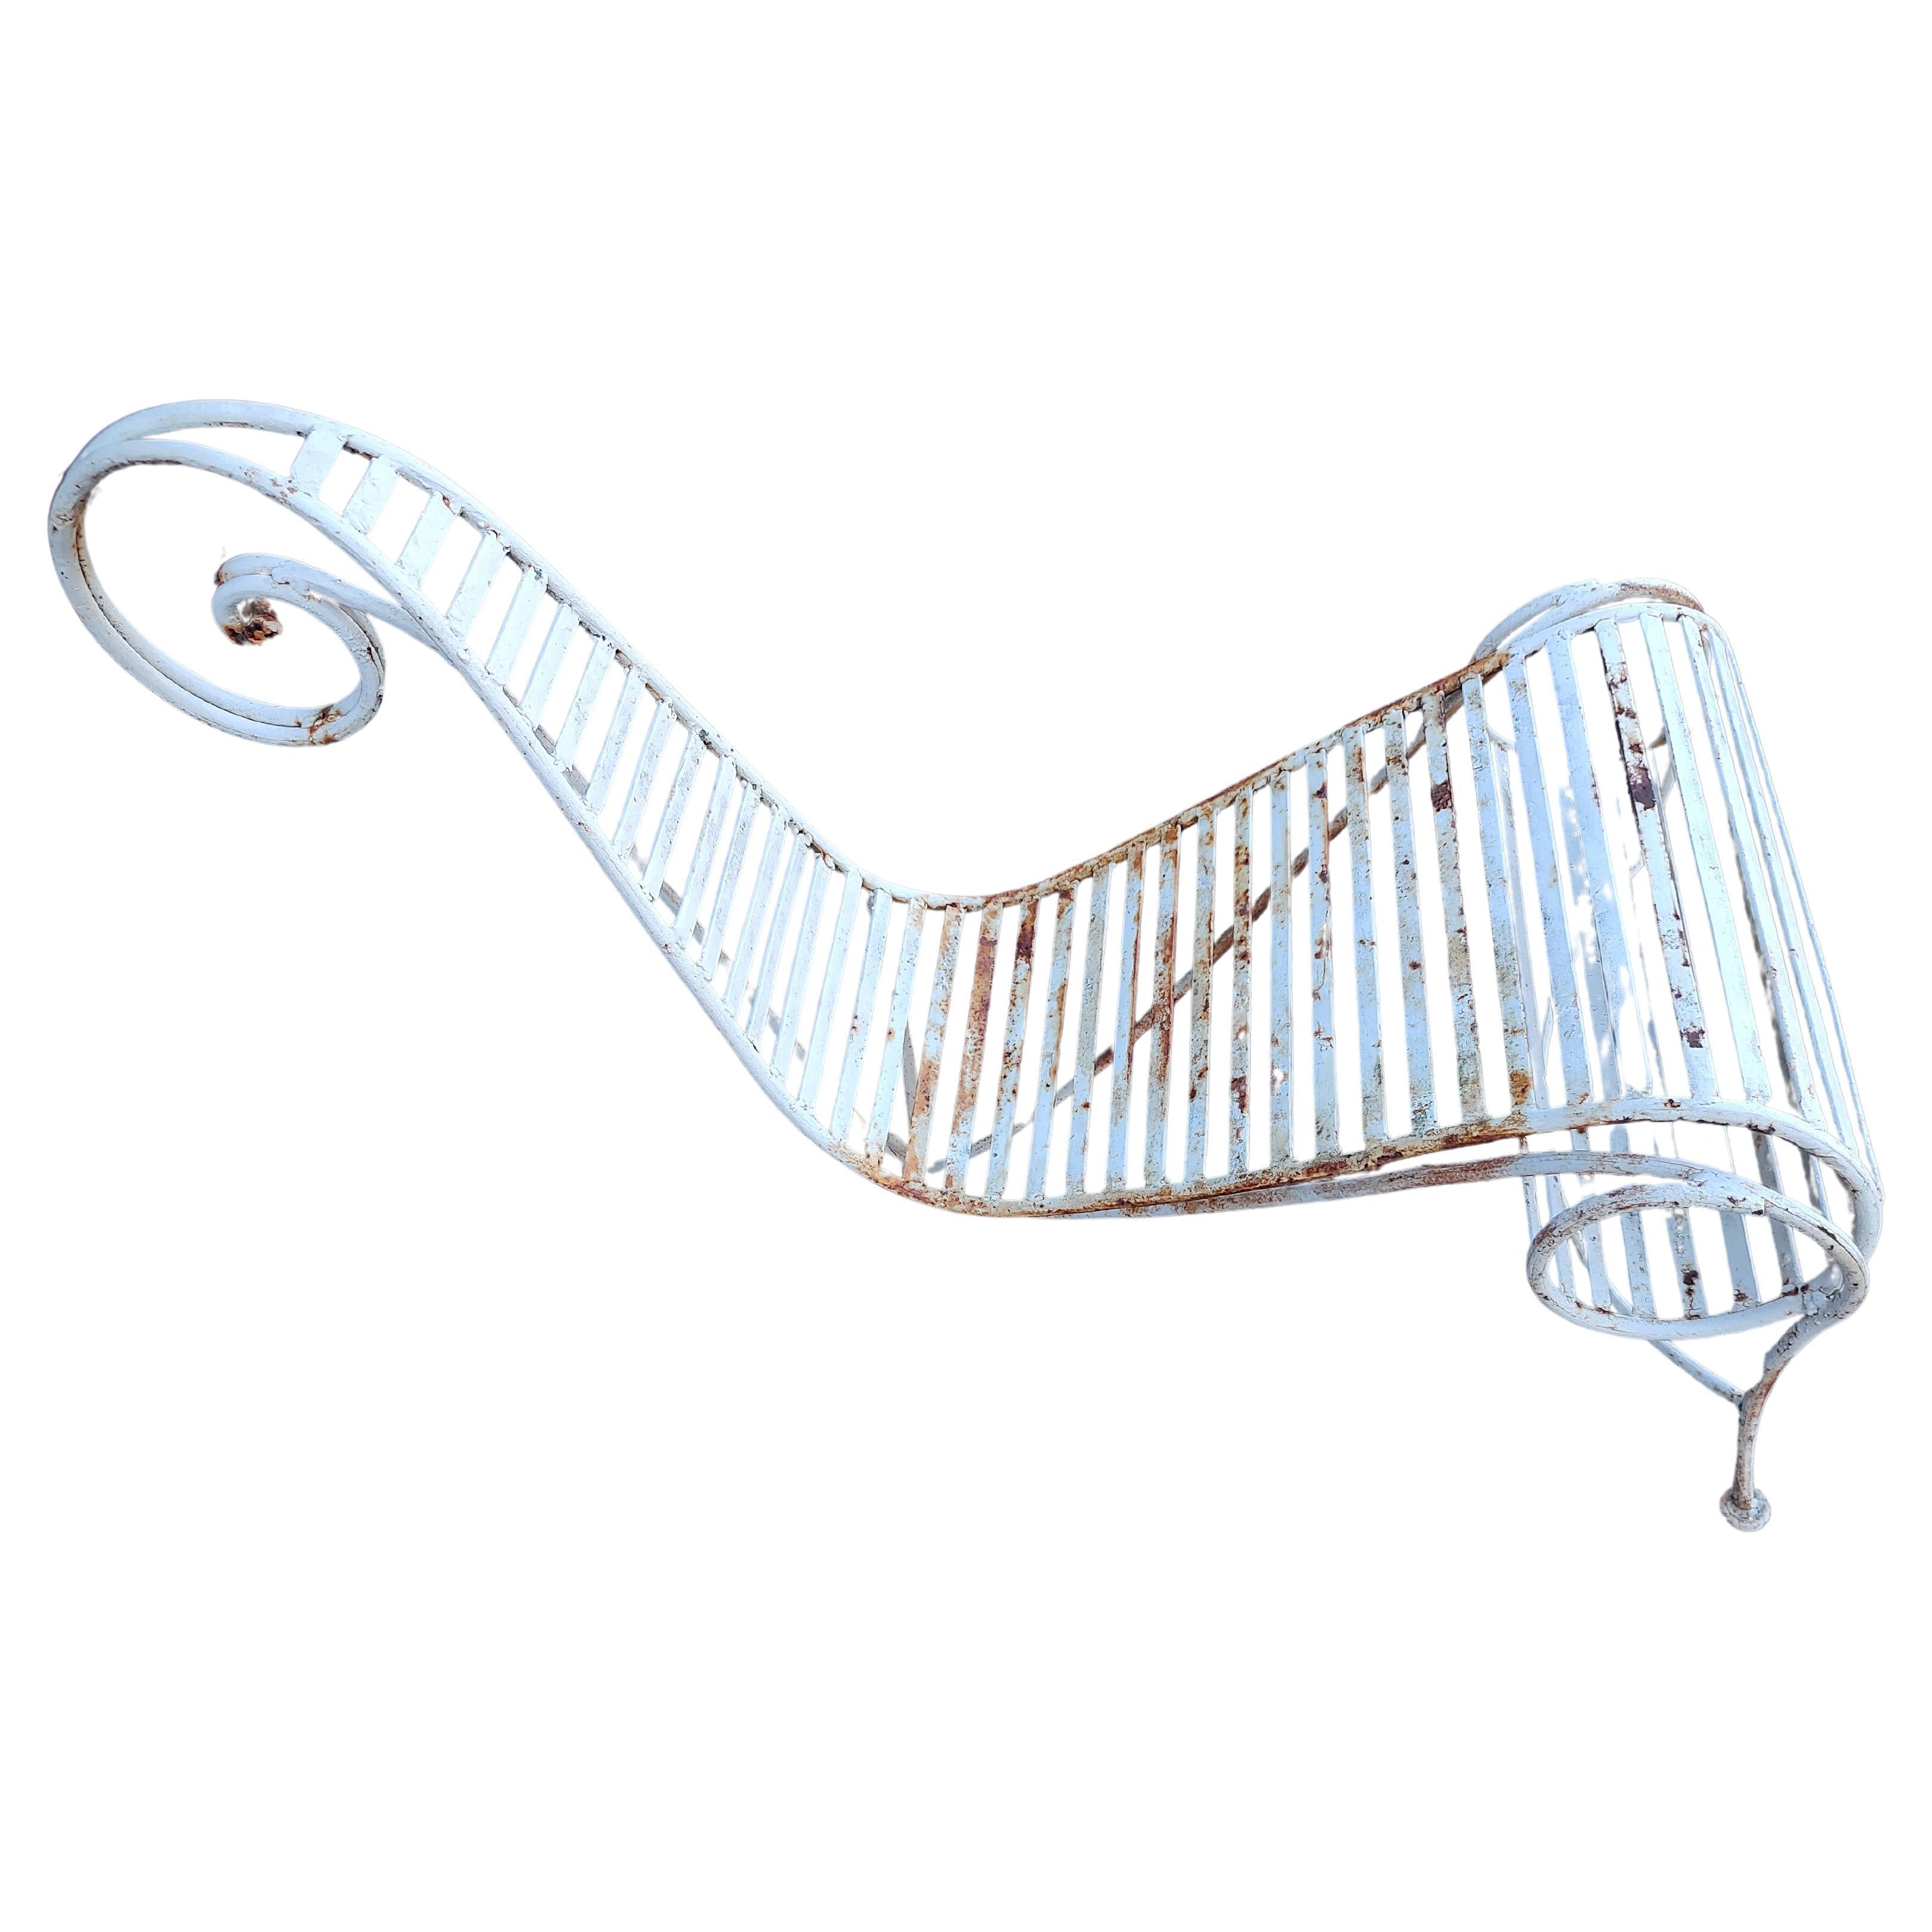 Fabelhaftes, sehniges Design aus den achtziger Jahren von Andre Dubreuil. Der Spine Chair ist ein rigoroser und skulpturaler Entwurf, der zukünftige Designer begeistern und ermutigen soll. In ausgezeichnetem Vintage-Zustand mit viel Patina.